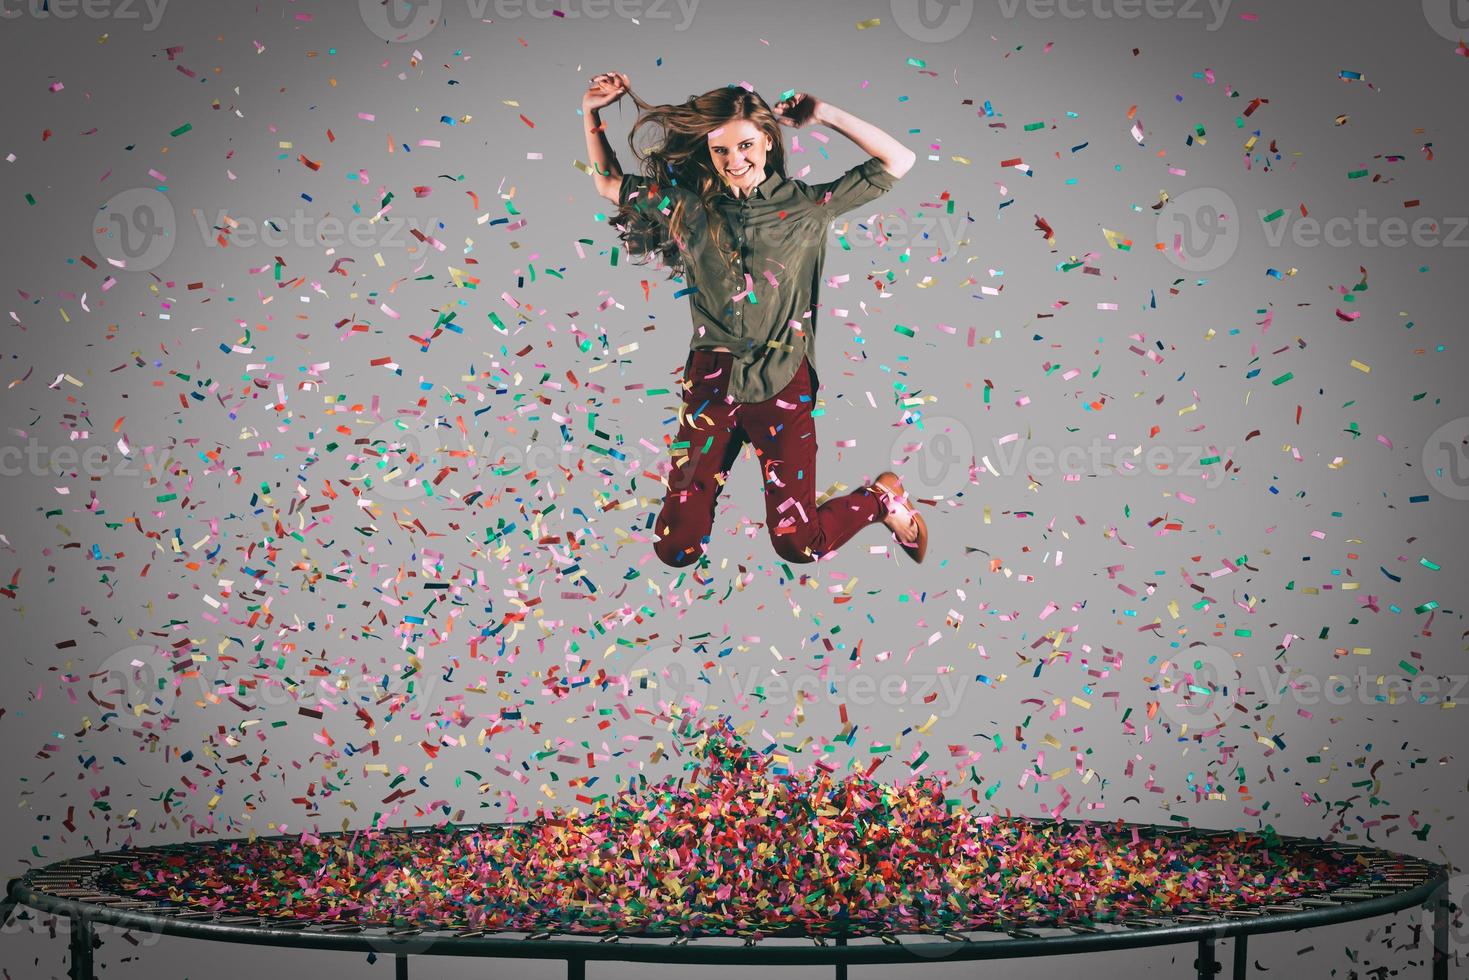 diversão colorida. tiro no ar da bela jovem pulando no trampolim com confete ao redor dela foto